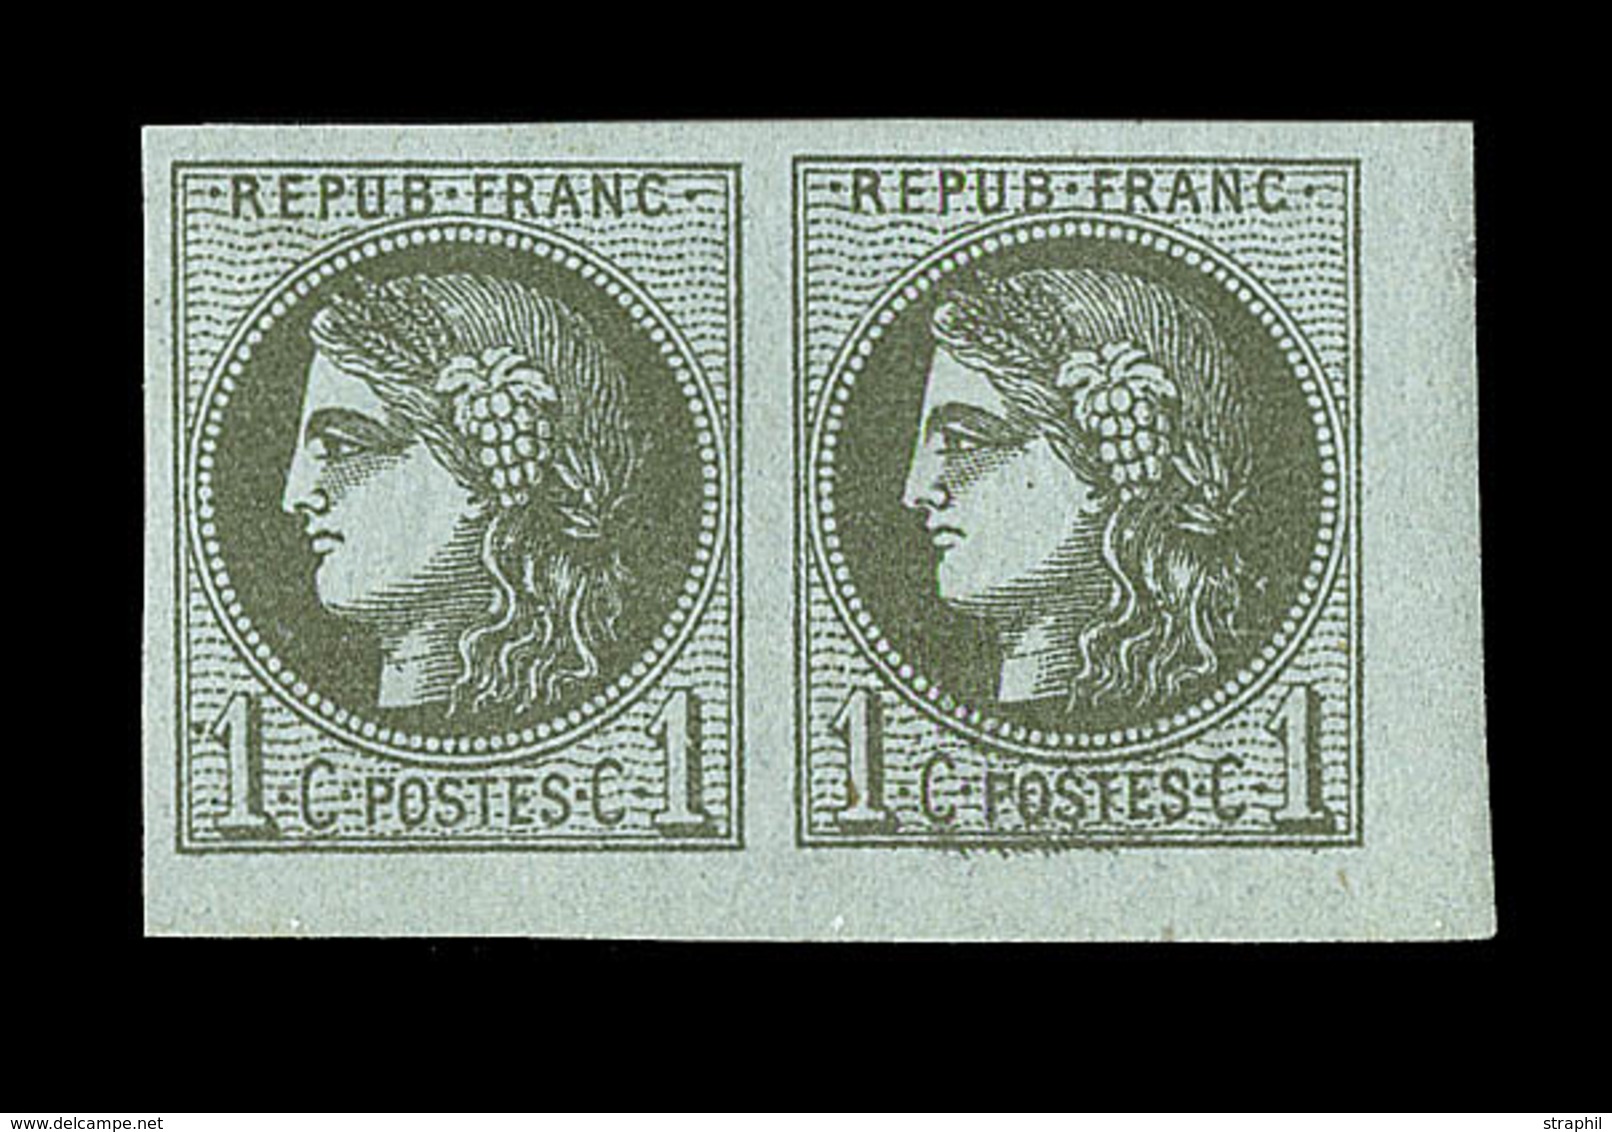 * EMISSION DE BORDEAUX - * - N°39C - Paire - CdF - Charn. Légère - Signé - TB/SUP - 1870 Bordeaux Printing